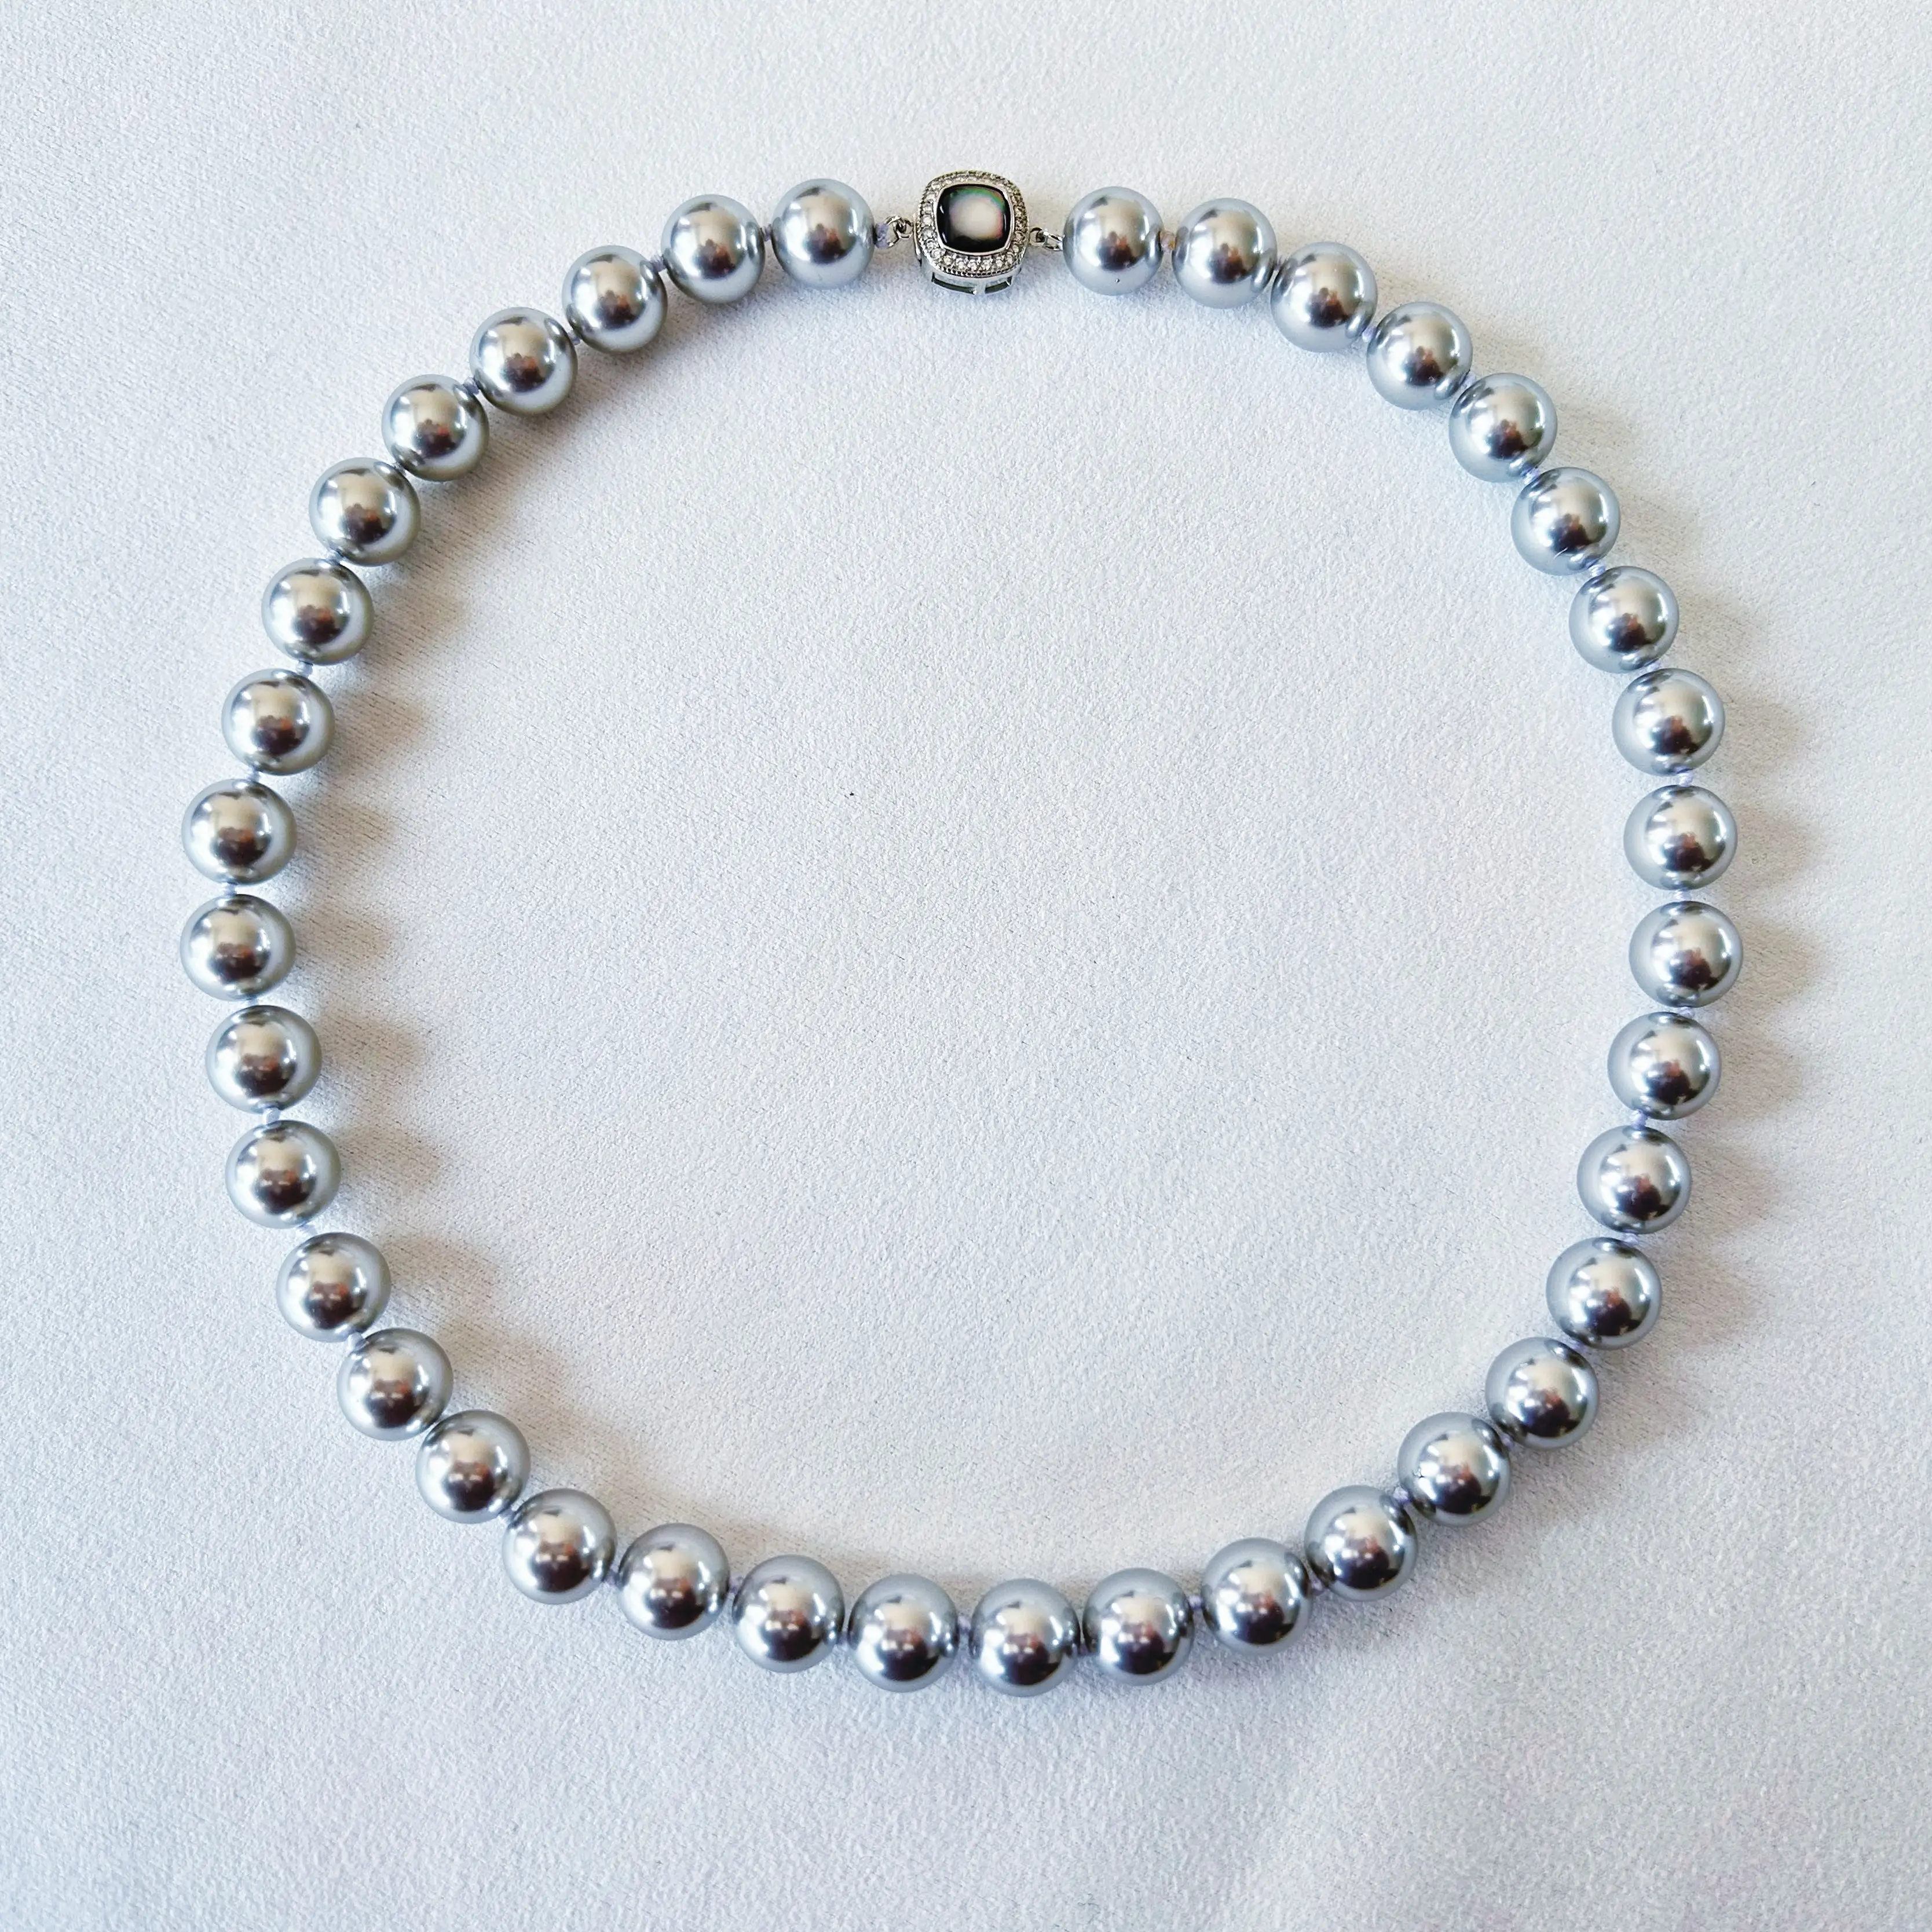 Concha de Mariposa Negra, colgante sobresaliente en un collar de cadena gris platino atemporal